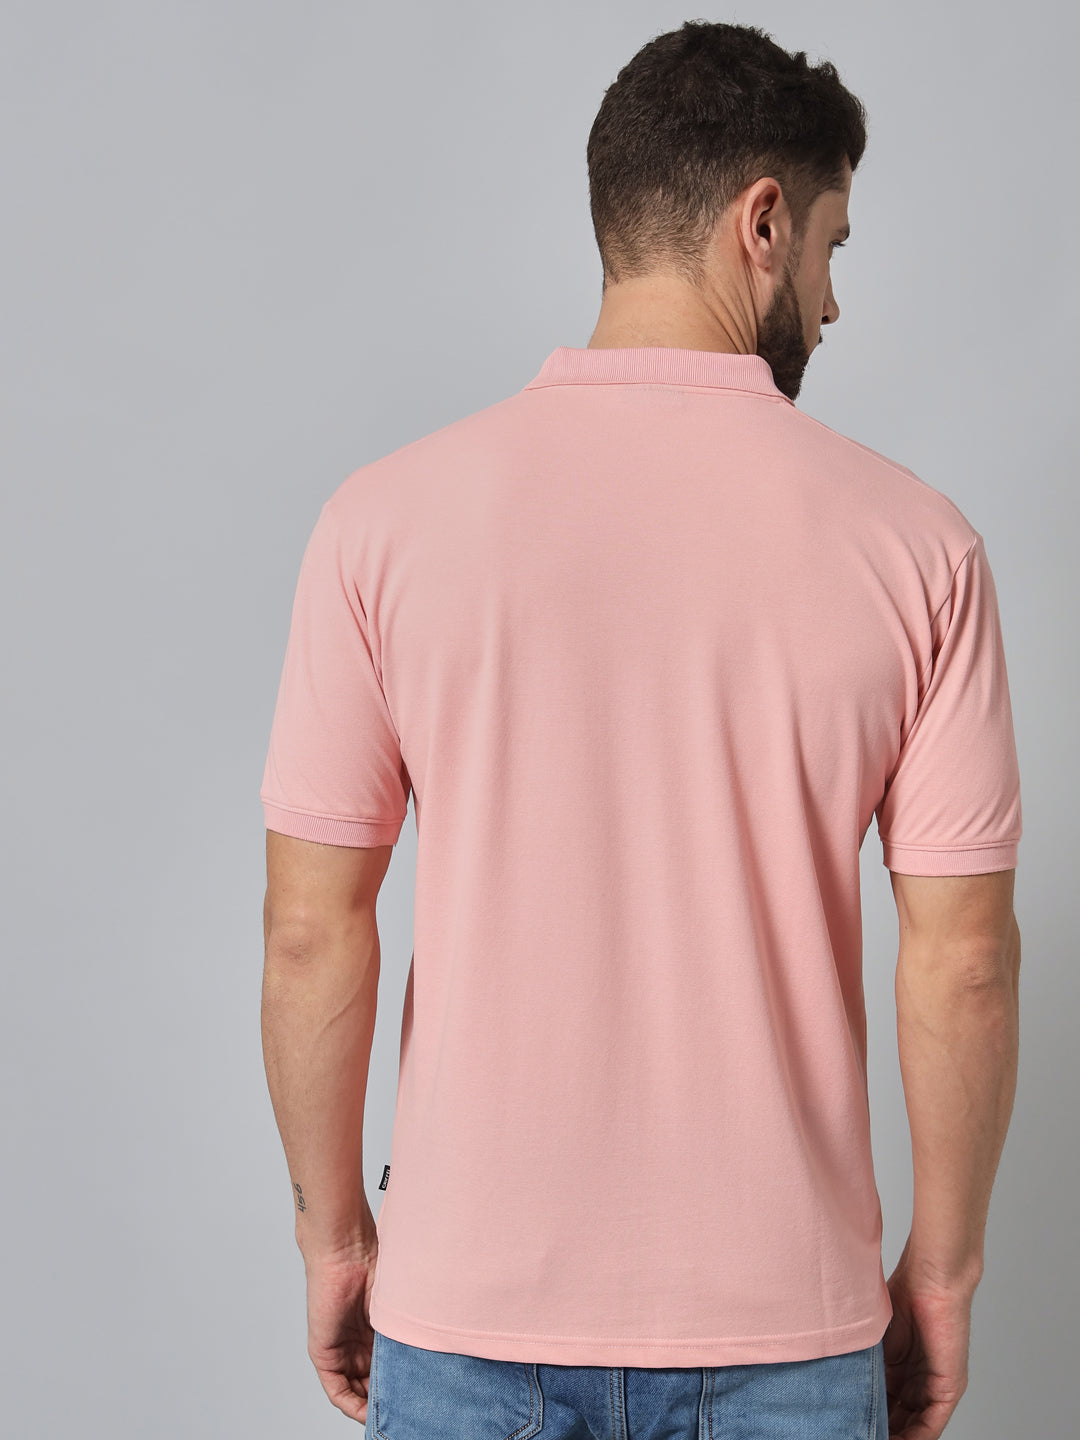 GRIFFEL Men's Peach Cotton Polo T-shirt - griffel